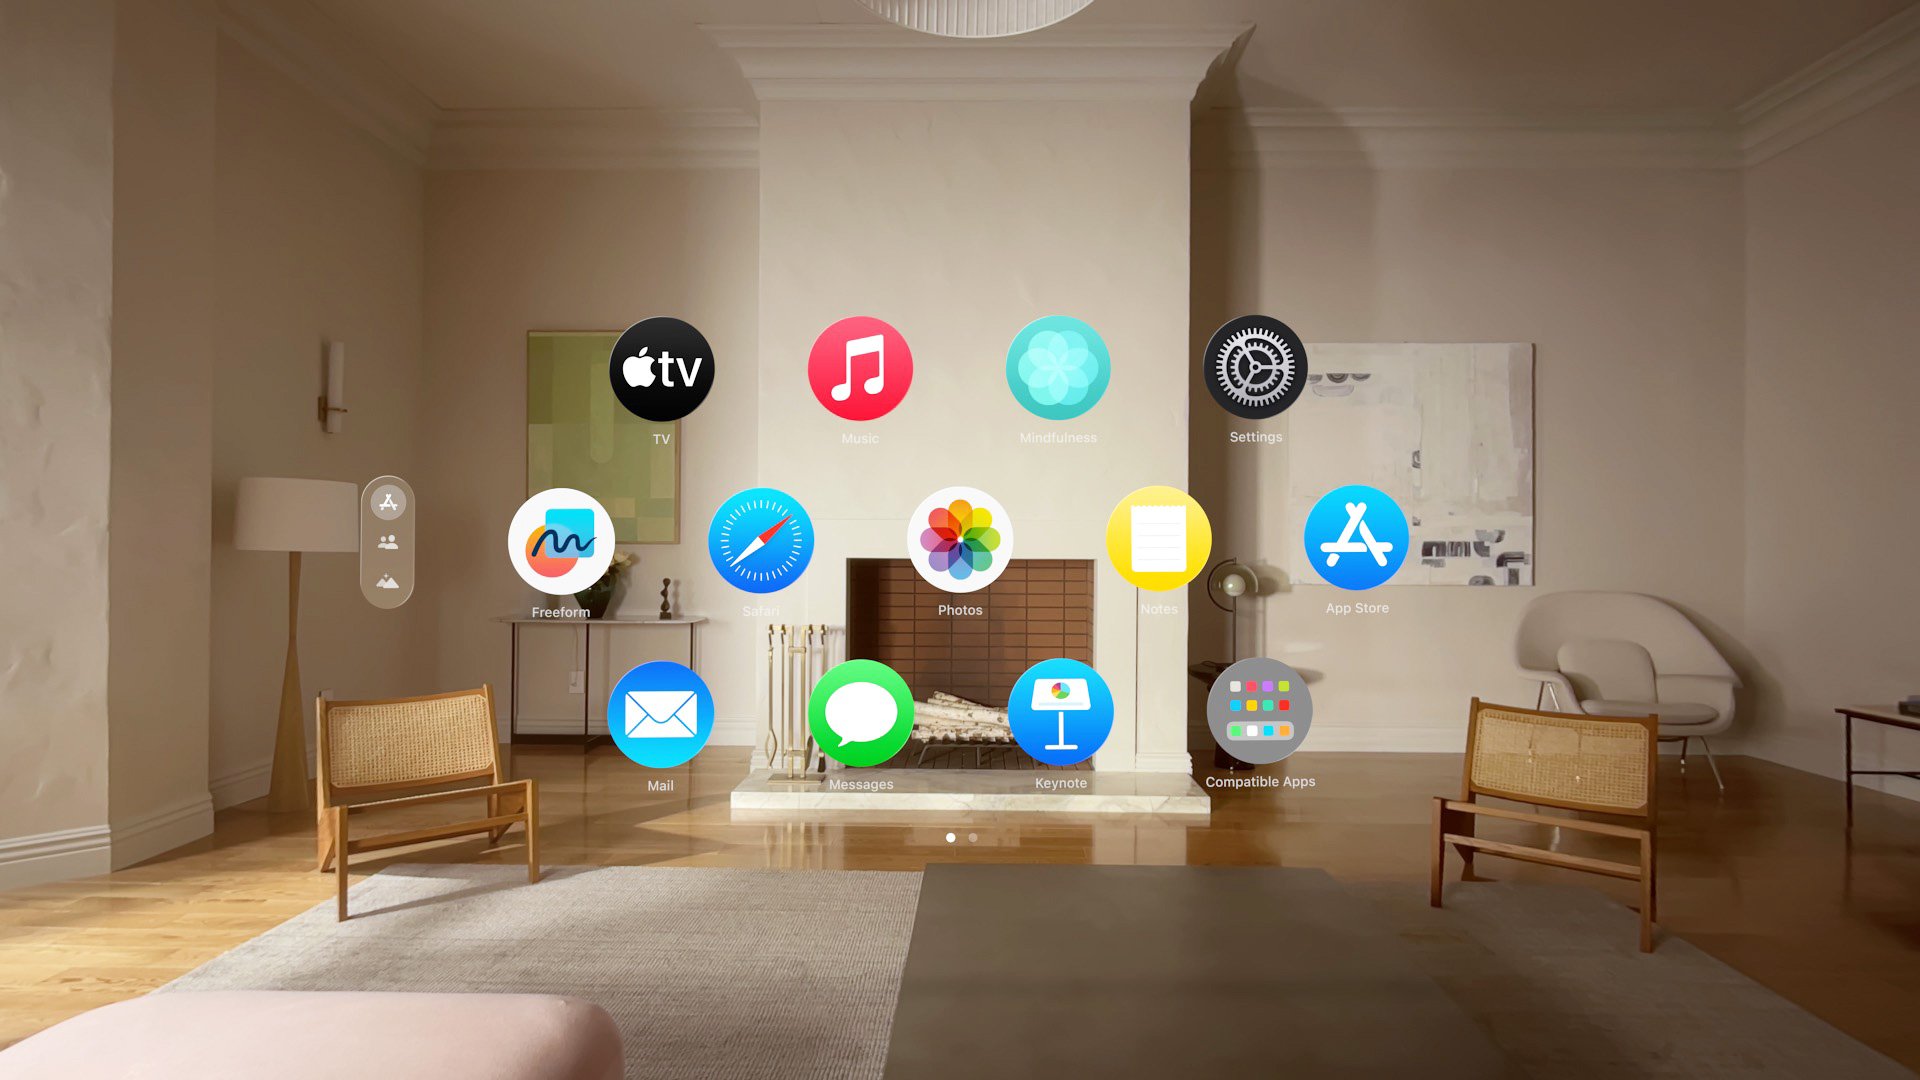 Vision Pro di Apple verrà lanciato con oltre 600 app create per esso